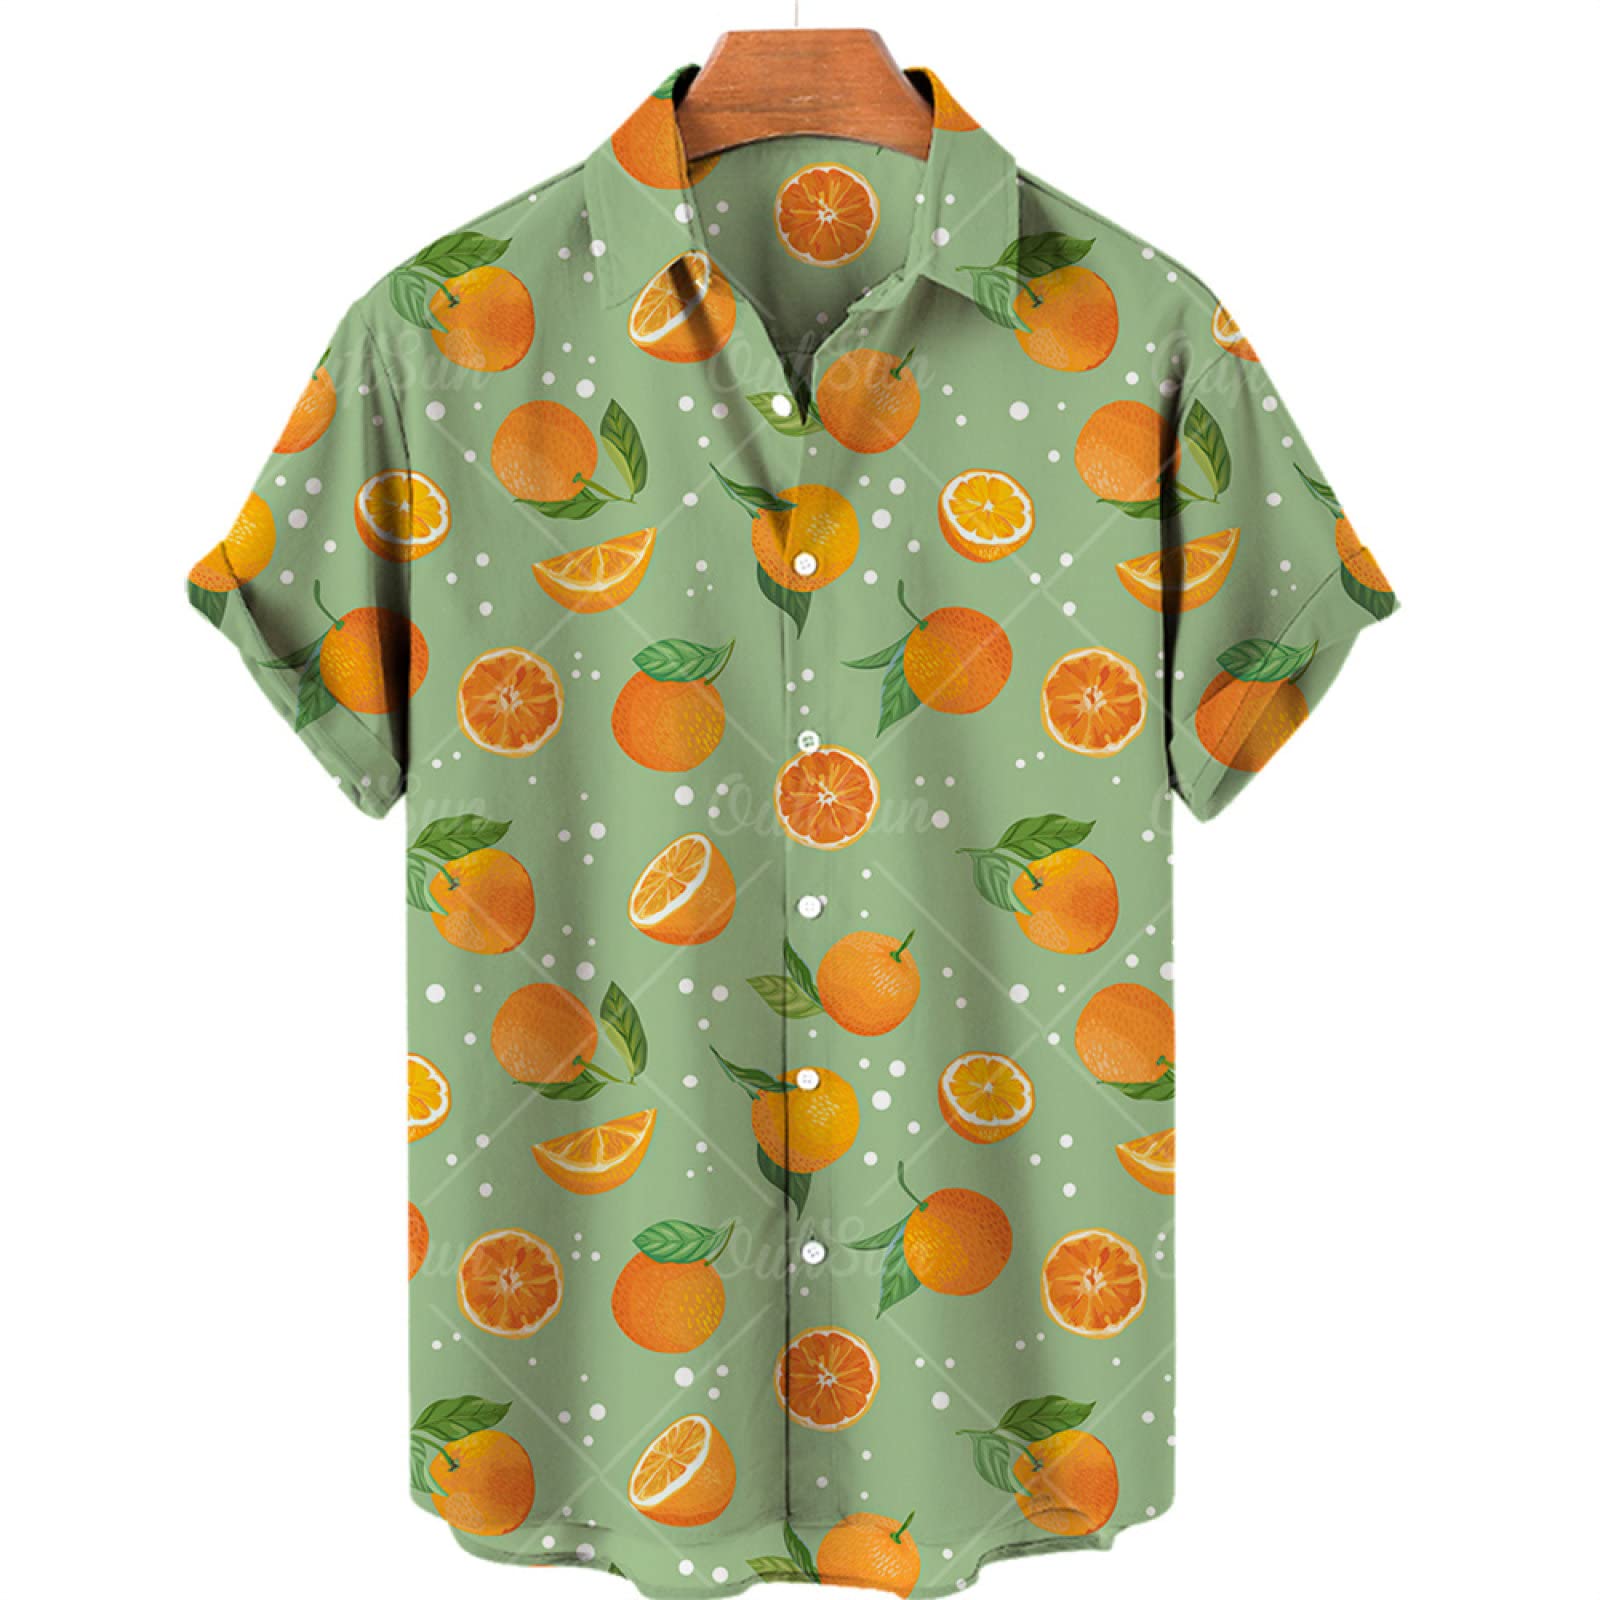 SHOUJIQQ Herren-Hawaii Hemd Aloha Hemden-Frucht-Zitronen Muster Bedruckt Kurzarm-Hemd Sommer-Strand-Lässige Bluse Mit Knöpfen Für Unisex-Party-Kleidung, A,X, Groß